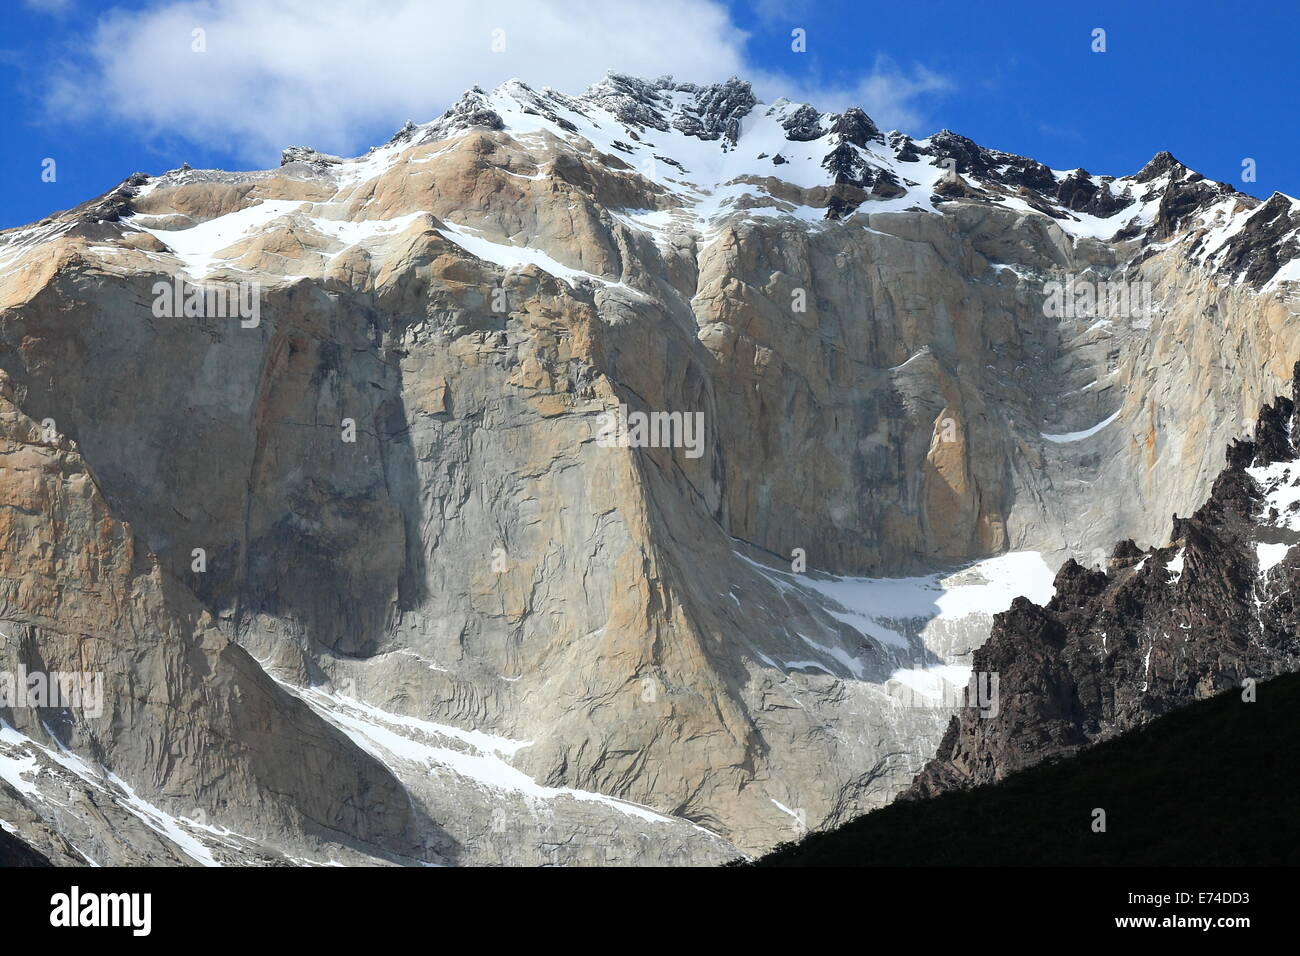 La roche des montagnes dans le Parc National Torres del Paine, Chili. Banque D'Images